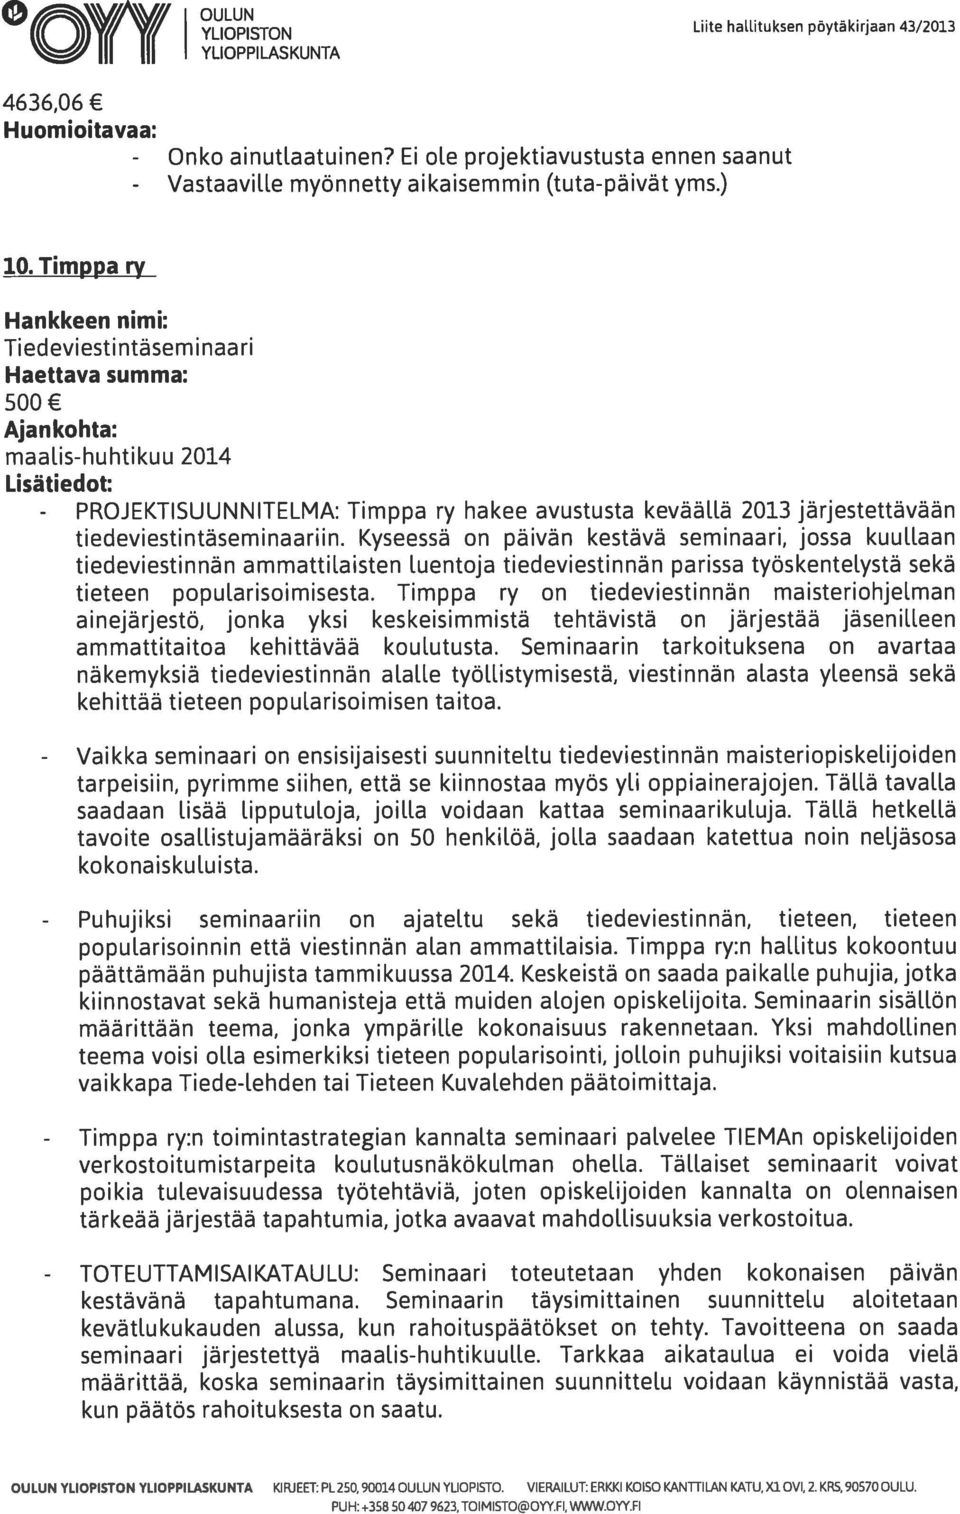 is-huhtikuu 2014 Lisätiedot: Timppa ry hakee avustusta keväällä 2013 järjestettävään tiedeviestintäseminaariin.